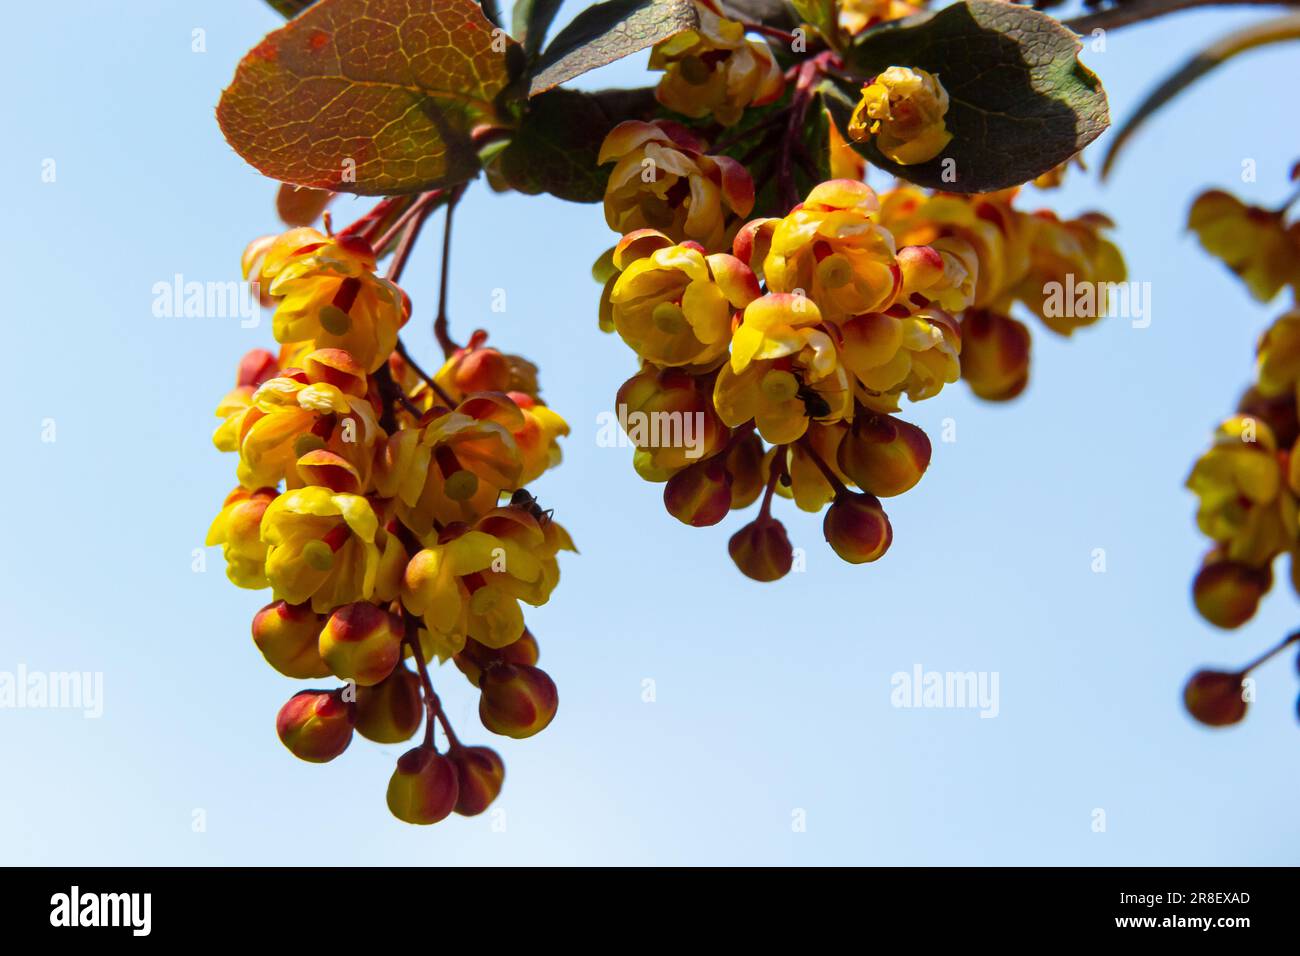 Berberis thunbergii arbusto fiorito ornamentale alla bacca giapponese, gruppo di bei fiori di petalo giallo in fiore, foglie viola-rossastre. Foto Stock